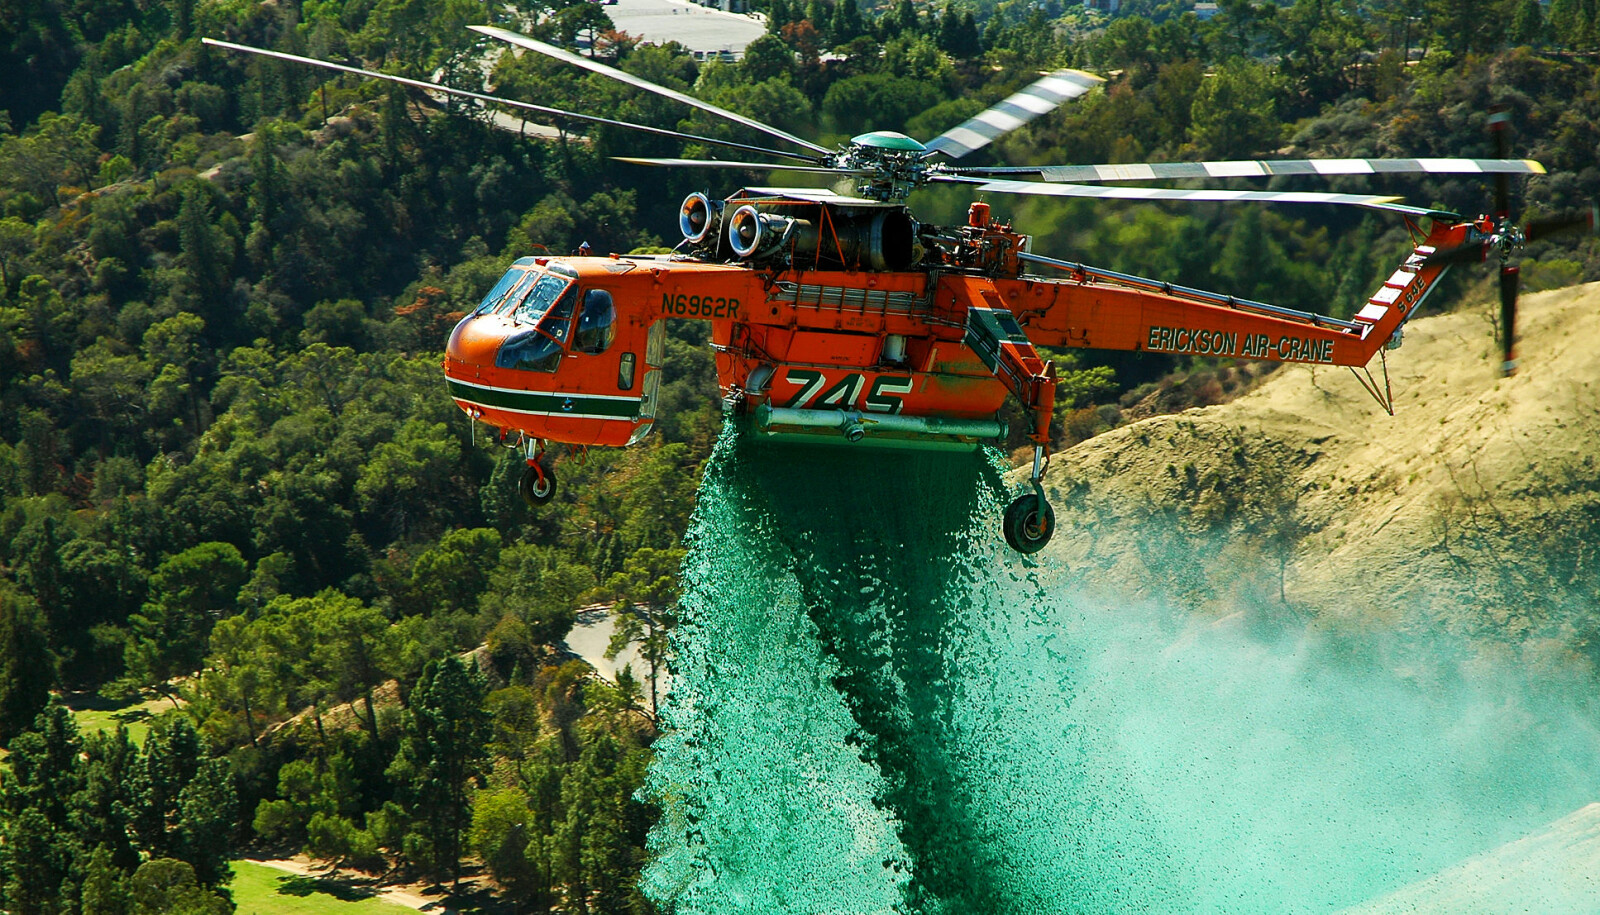 <b>FREMSTE ARBEIDSOPPGAVE:</b> Selv om oppdragene er mange for Erickson-Air Cranes helikoptre, så er nok skogbrann­slukking øverst på listen. Her kjemper ett av dem mot skogbranner i det sørlige California.